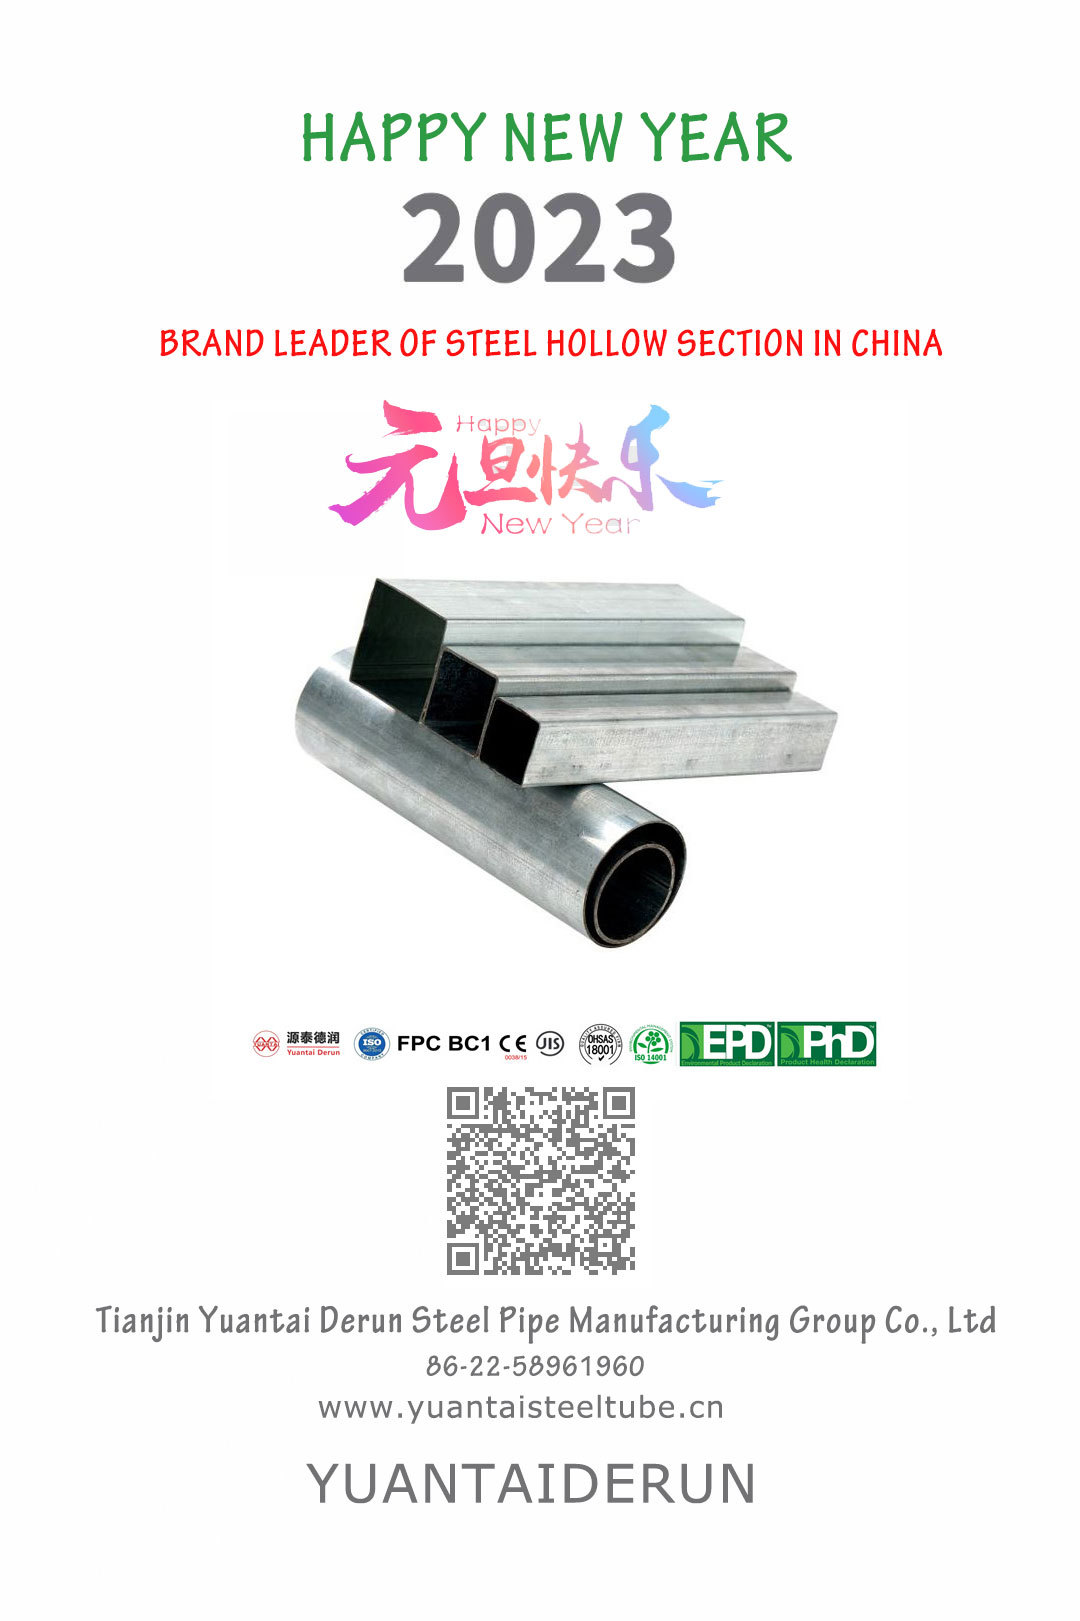 Feliz año nuevo - Tianjin yuantai derun Steel Pipe Manufacturing Group